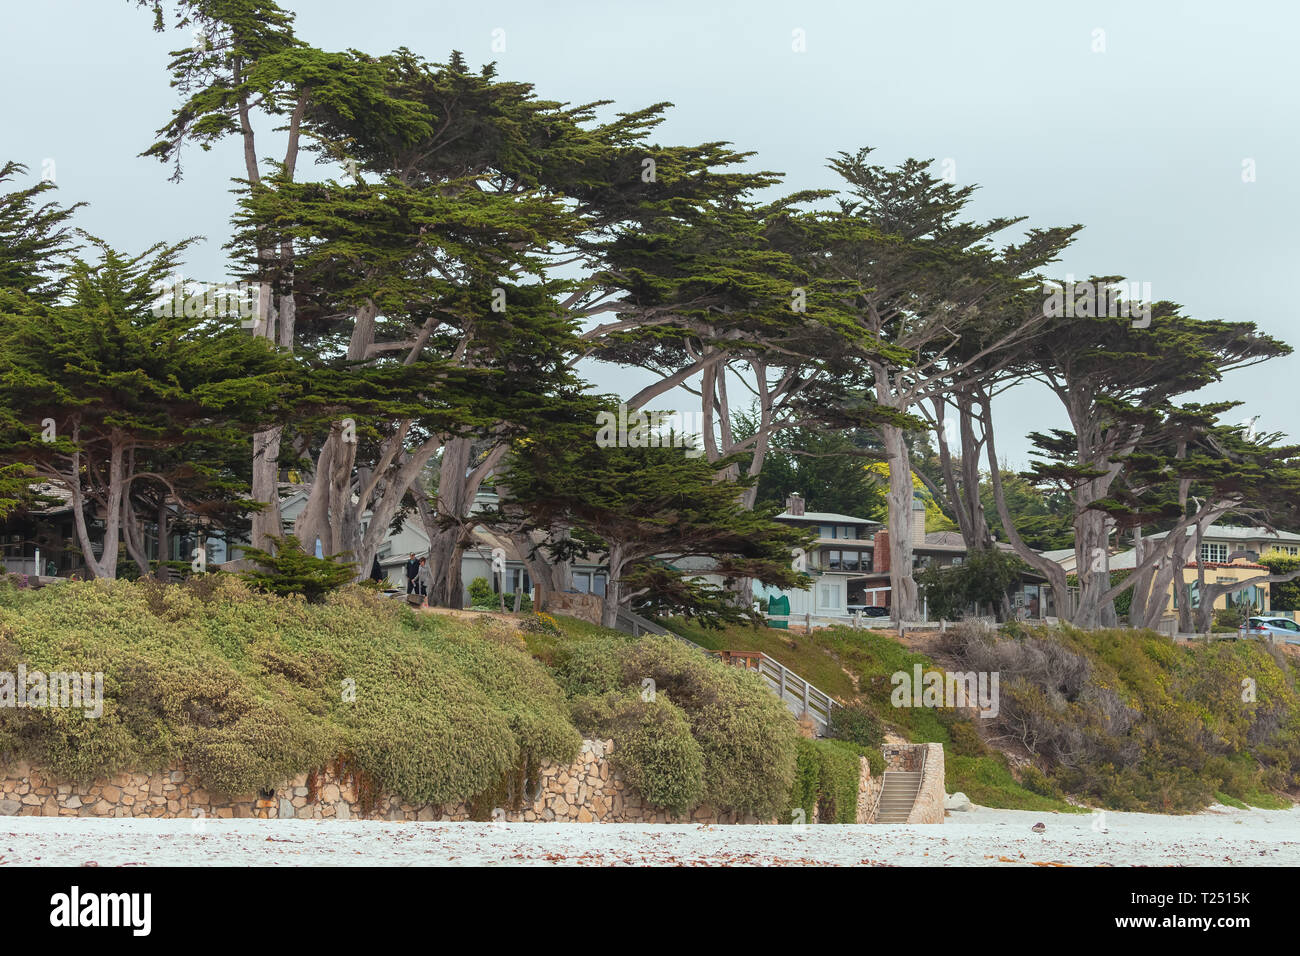 Monterey Zypressen (Cupressus macrocarpa) entlang der Carmel Beach in Carmel, Kalifornien, Vereinigte Staaten. Stockfoto